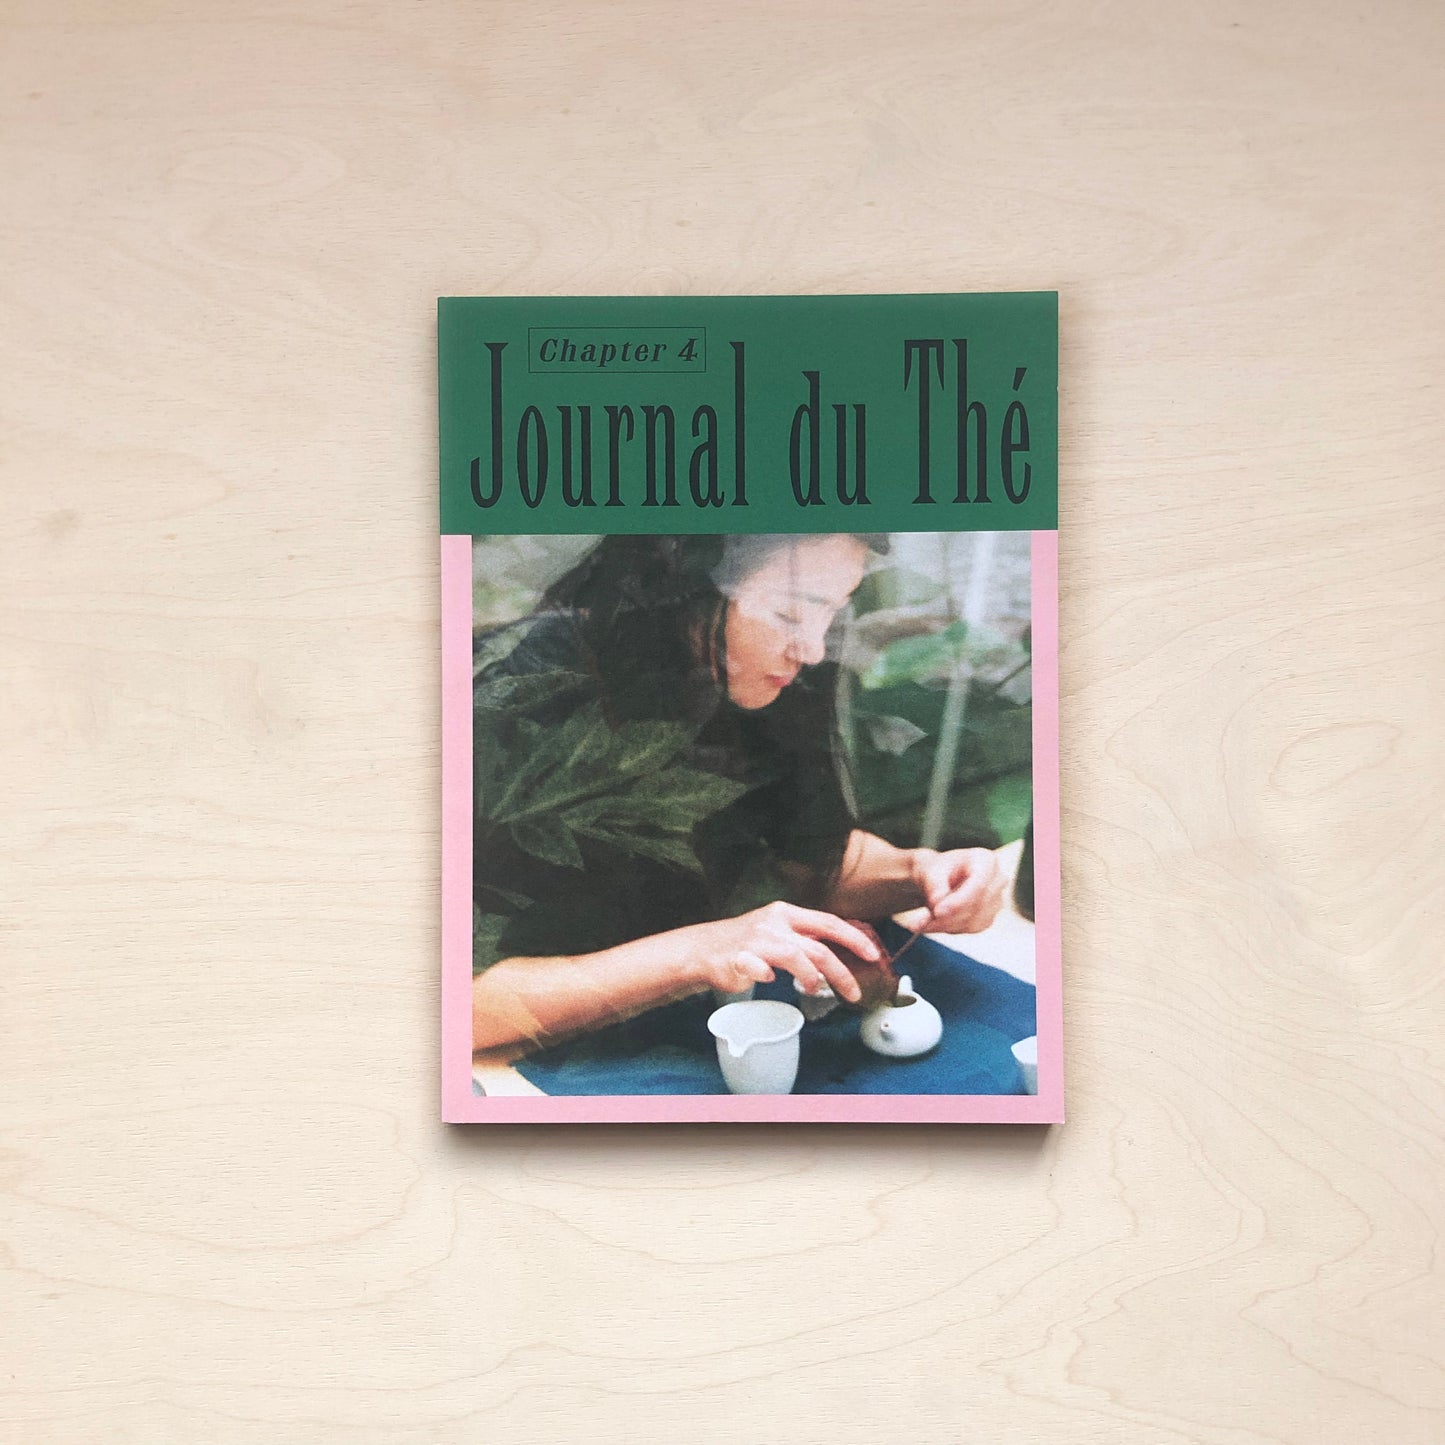 Journal du Thé - Contemporary Tea Culture, Chapter 4